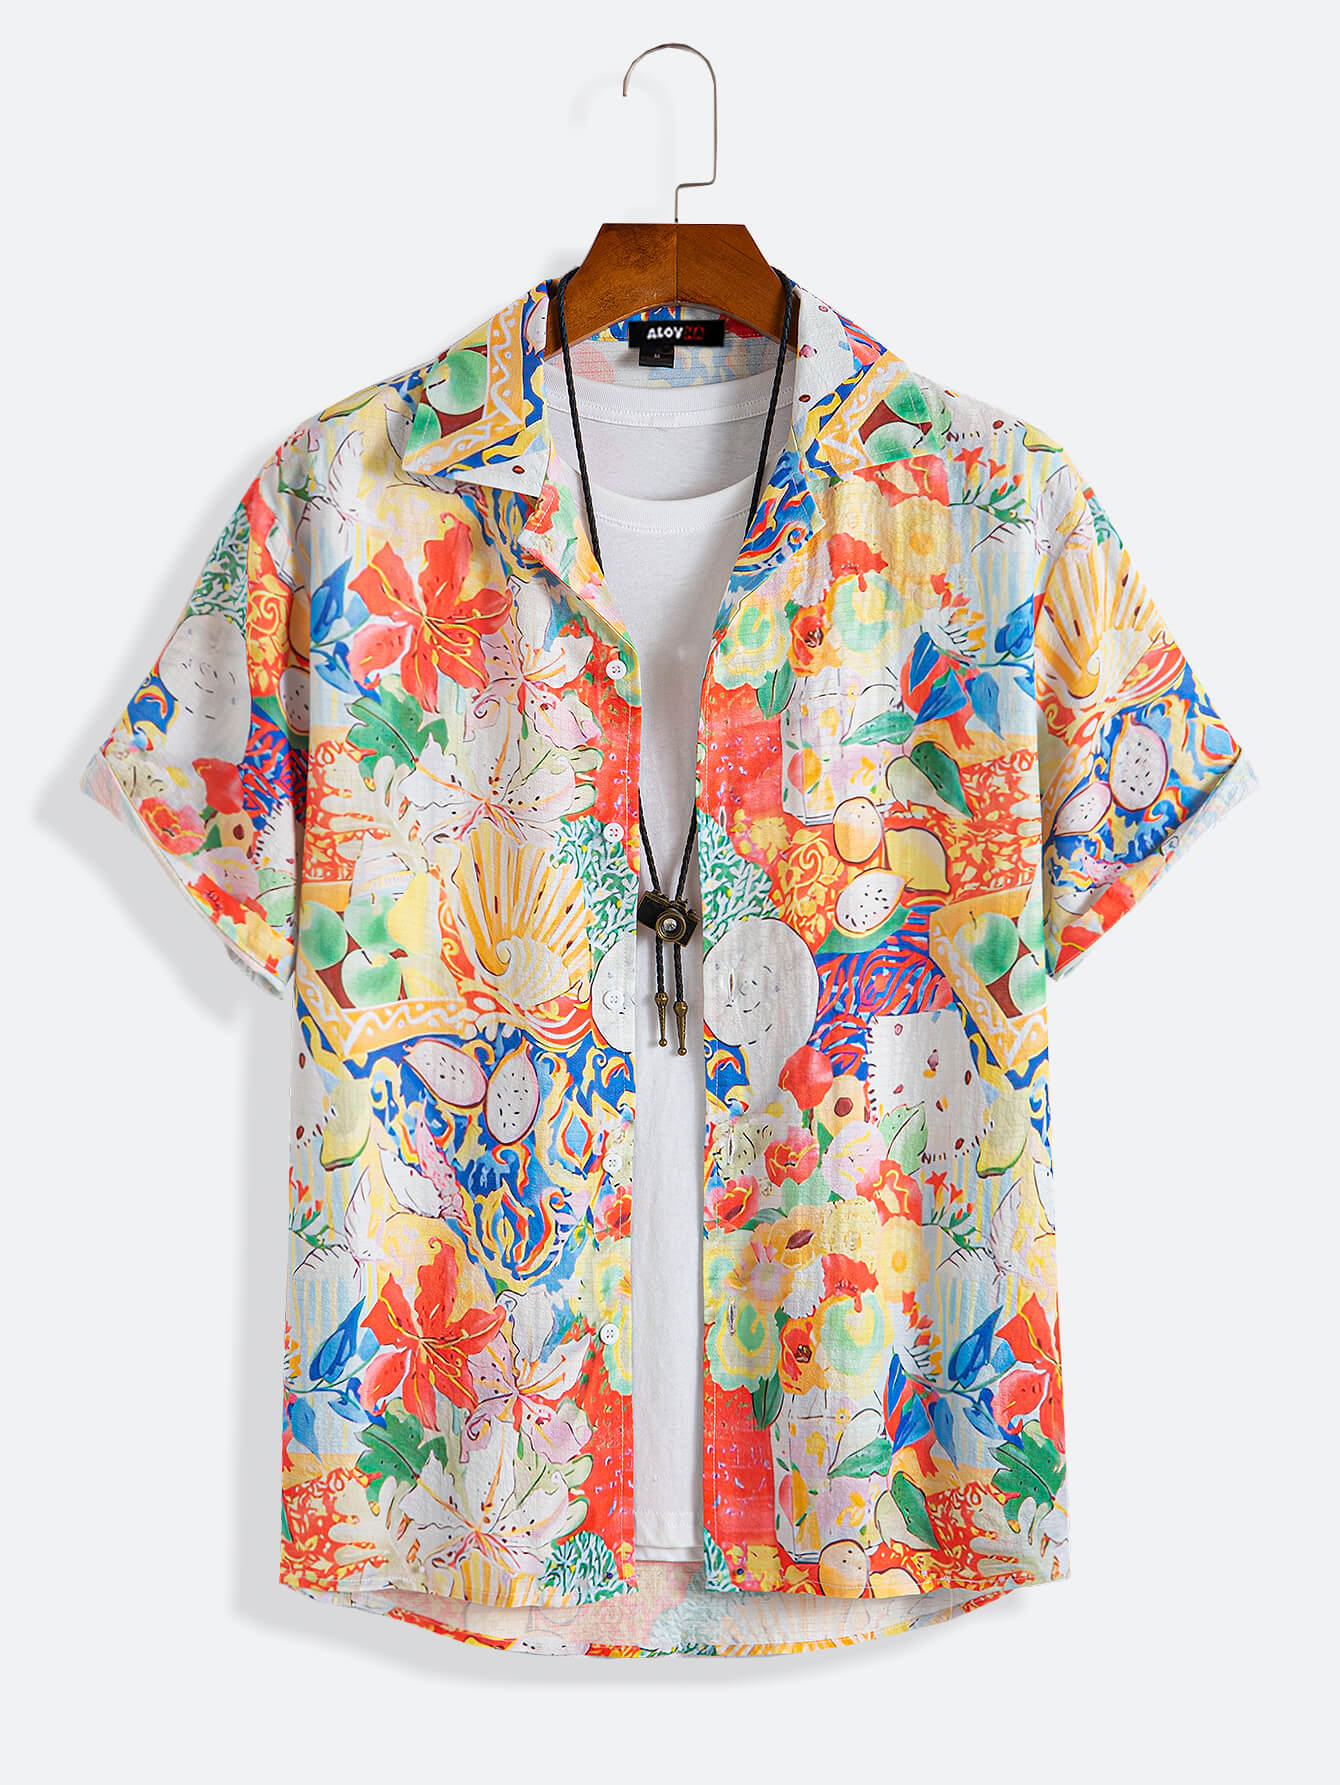 1970s Men's Vintage Hawaiian Shirt Floral Fruit Ocean Print Camp Collar Shirt